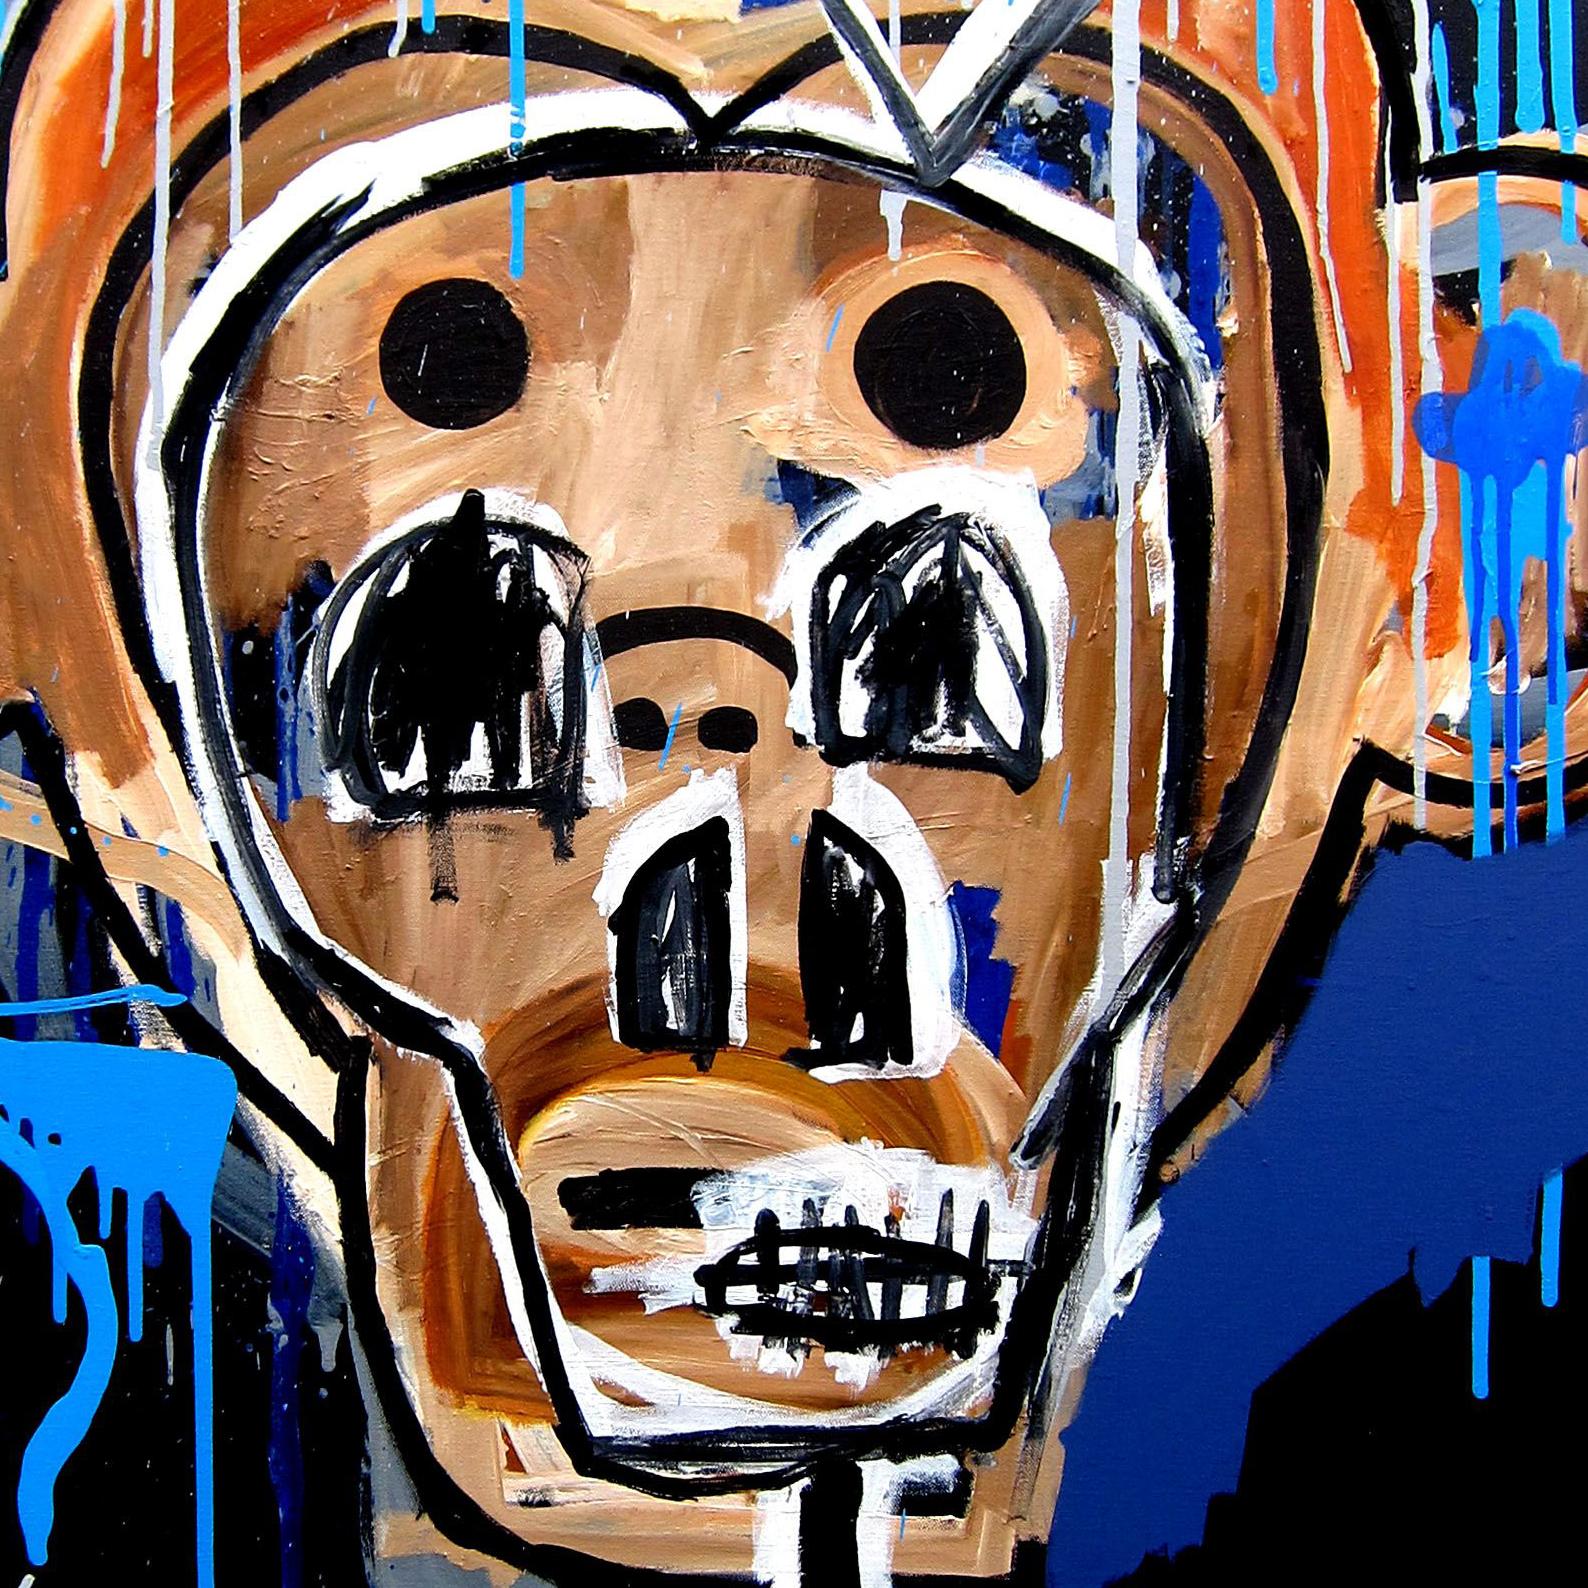 Monkey see, monkey do (imitator), Mixed Media on Canvas - Abstract Mixed Media Art by Cameron Holmes